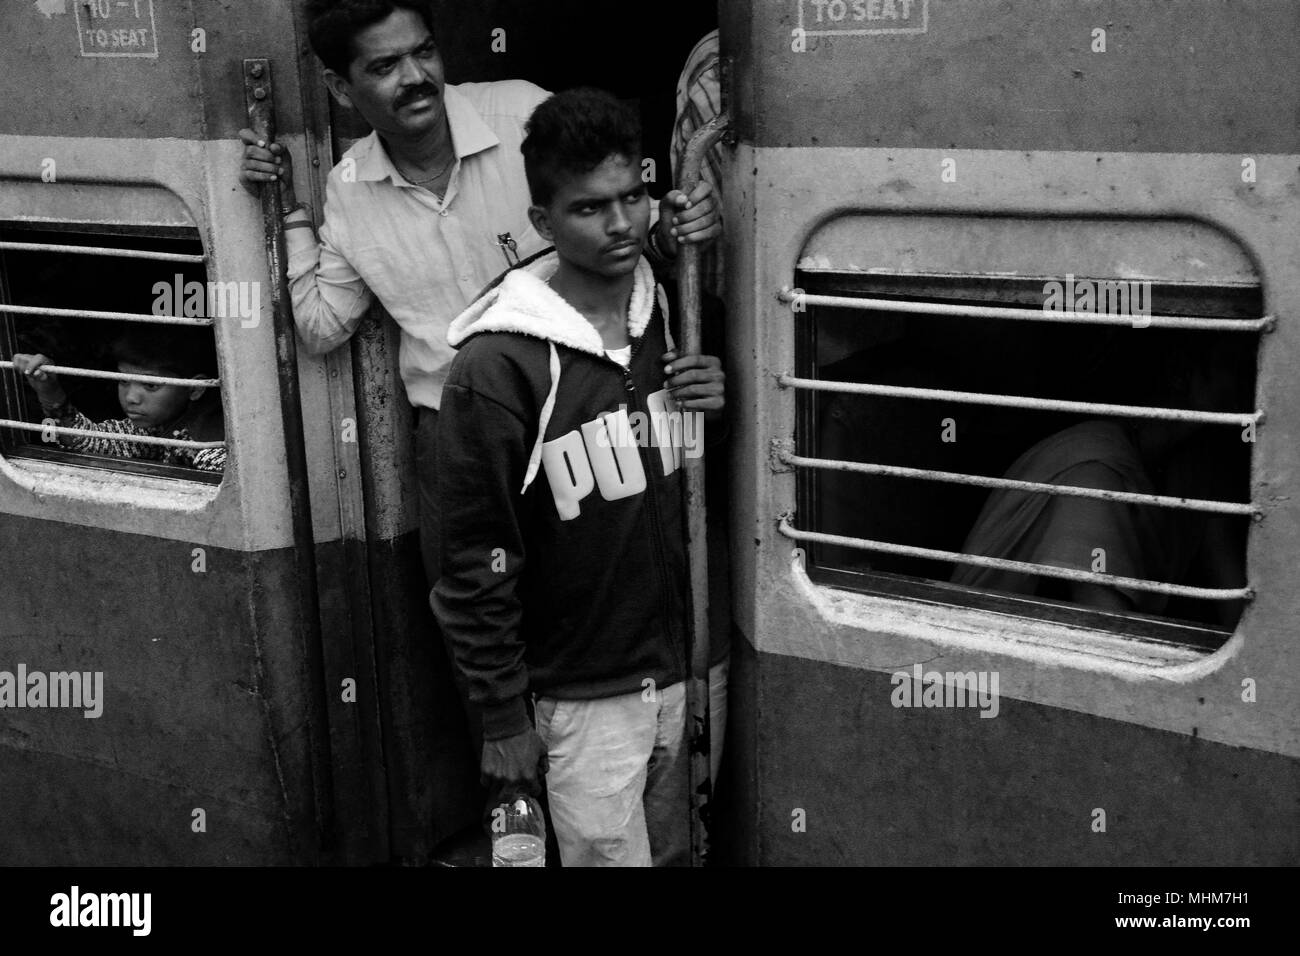 Deux hommes suspendus dangereusement hors de la gare porte en prévision de leur arrivée à leur destination, l'Inde Banque D'Images